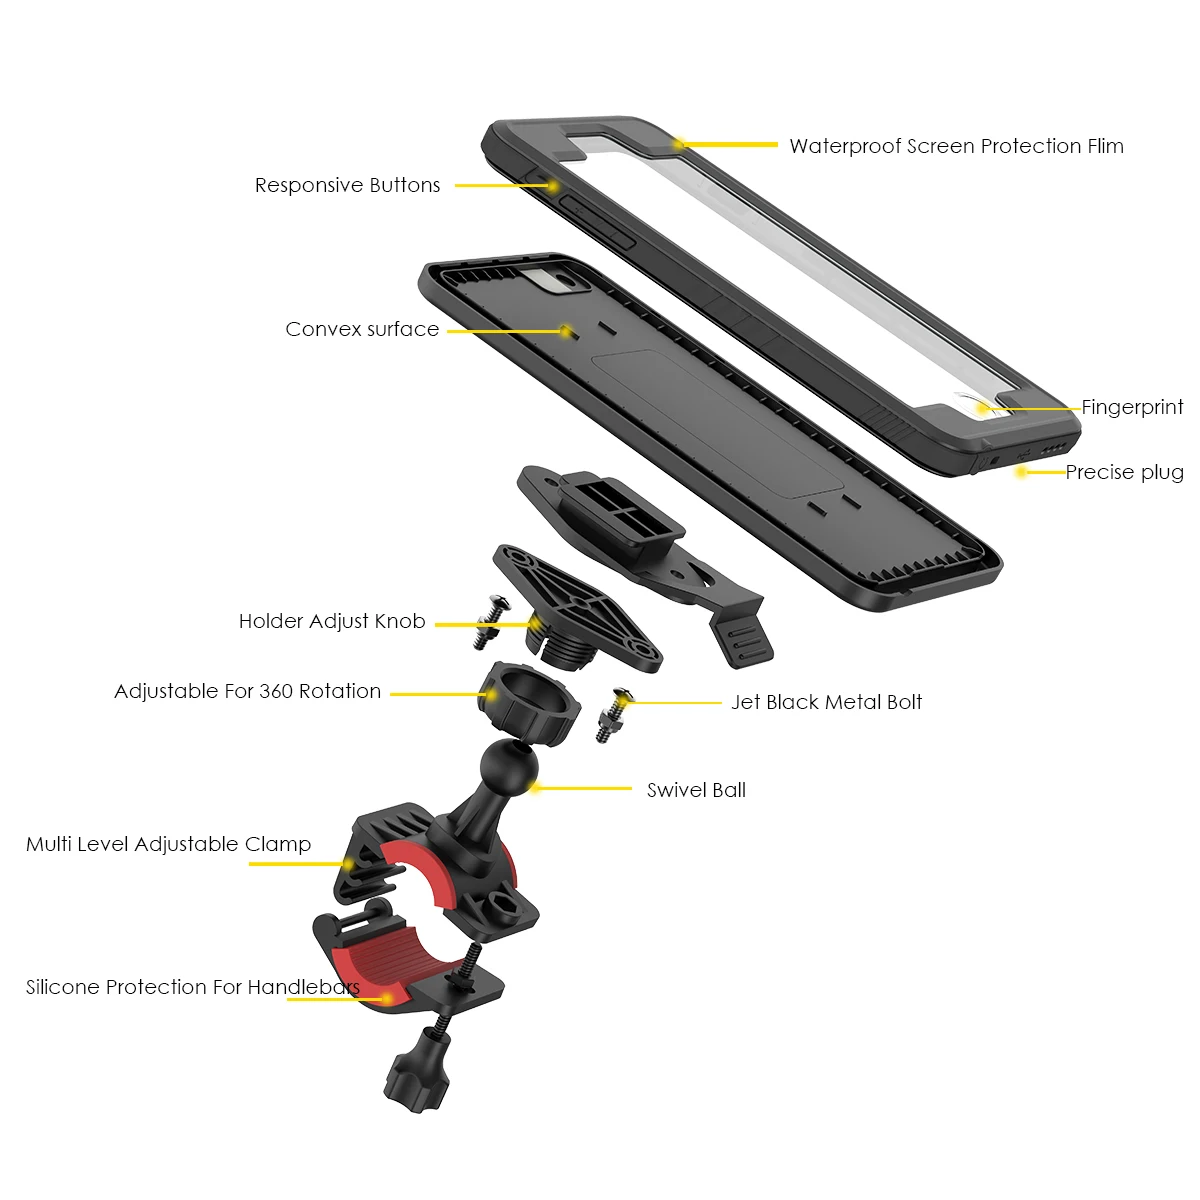 Водонепроницаемый чехол для телефона для iPhone 6/6s чехол 360 градусов Защита ударопрочный чехол для телефона с вращающимся велосипедным держателем для телефона